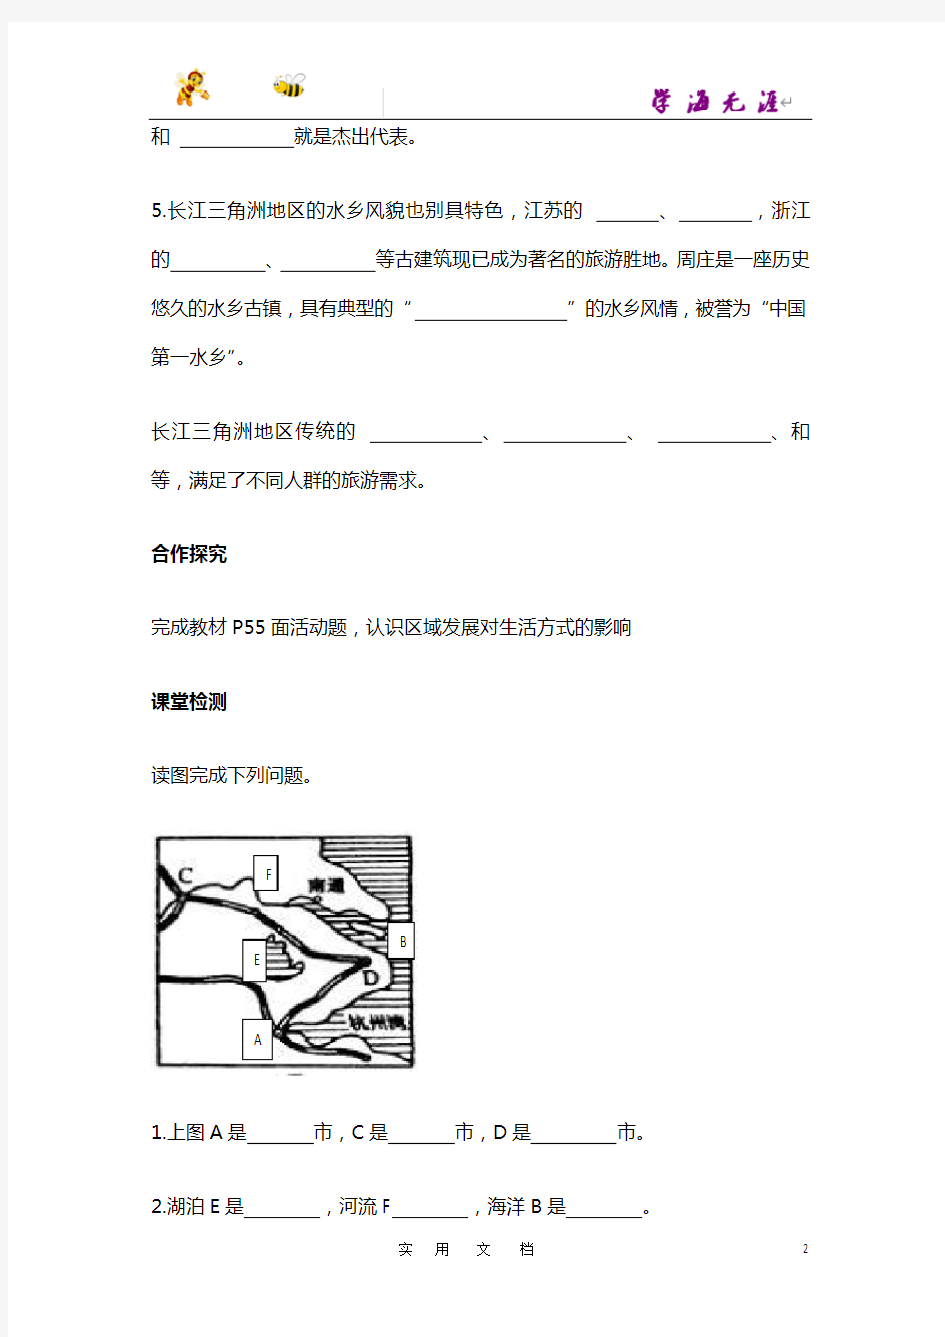 第二节  “鱼米之乡”——长江三角洲地区  (2)